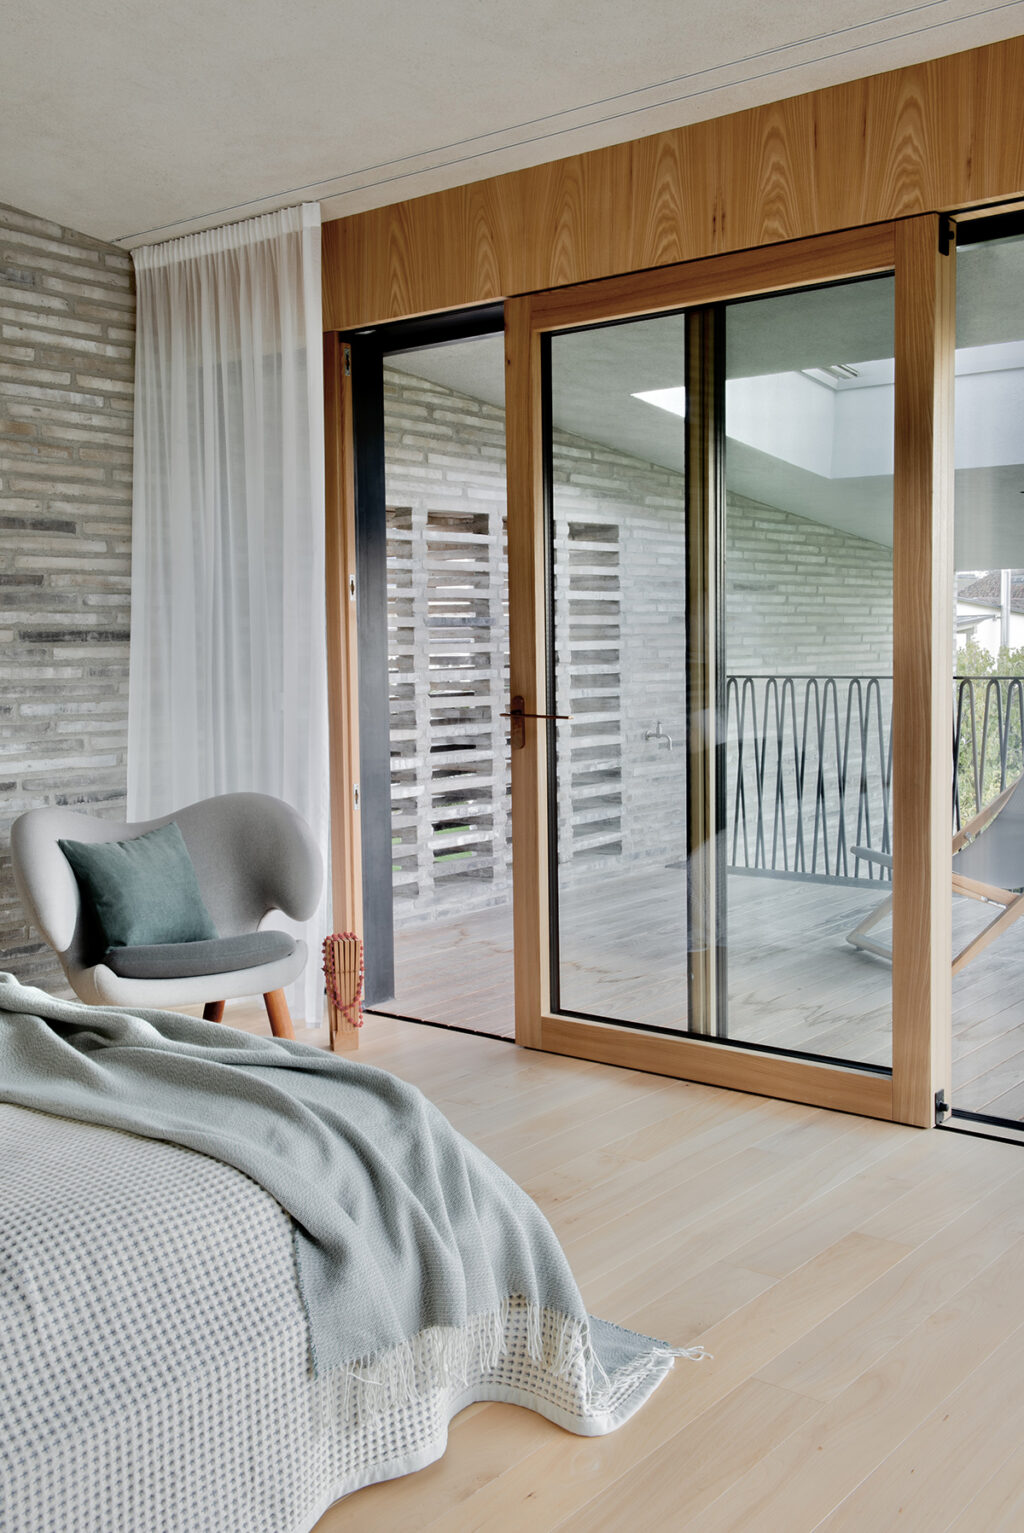 Premier étage, chambre double avec terrasse ©Paolo Abate